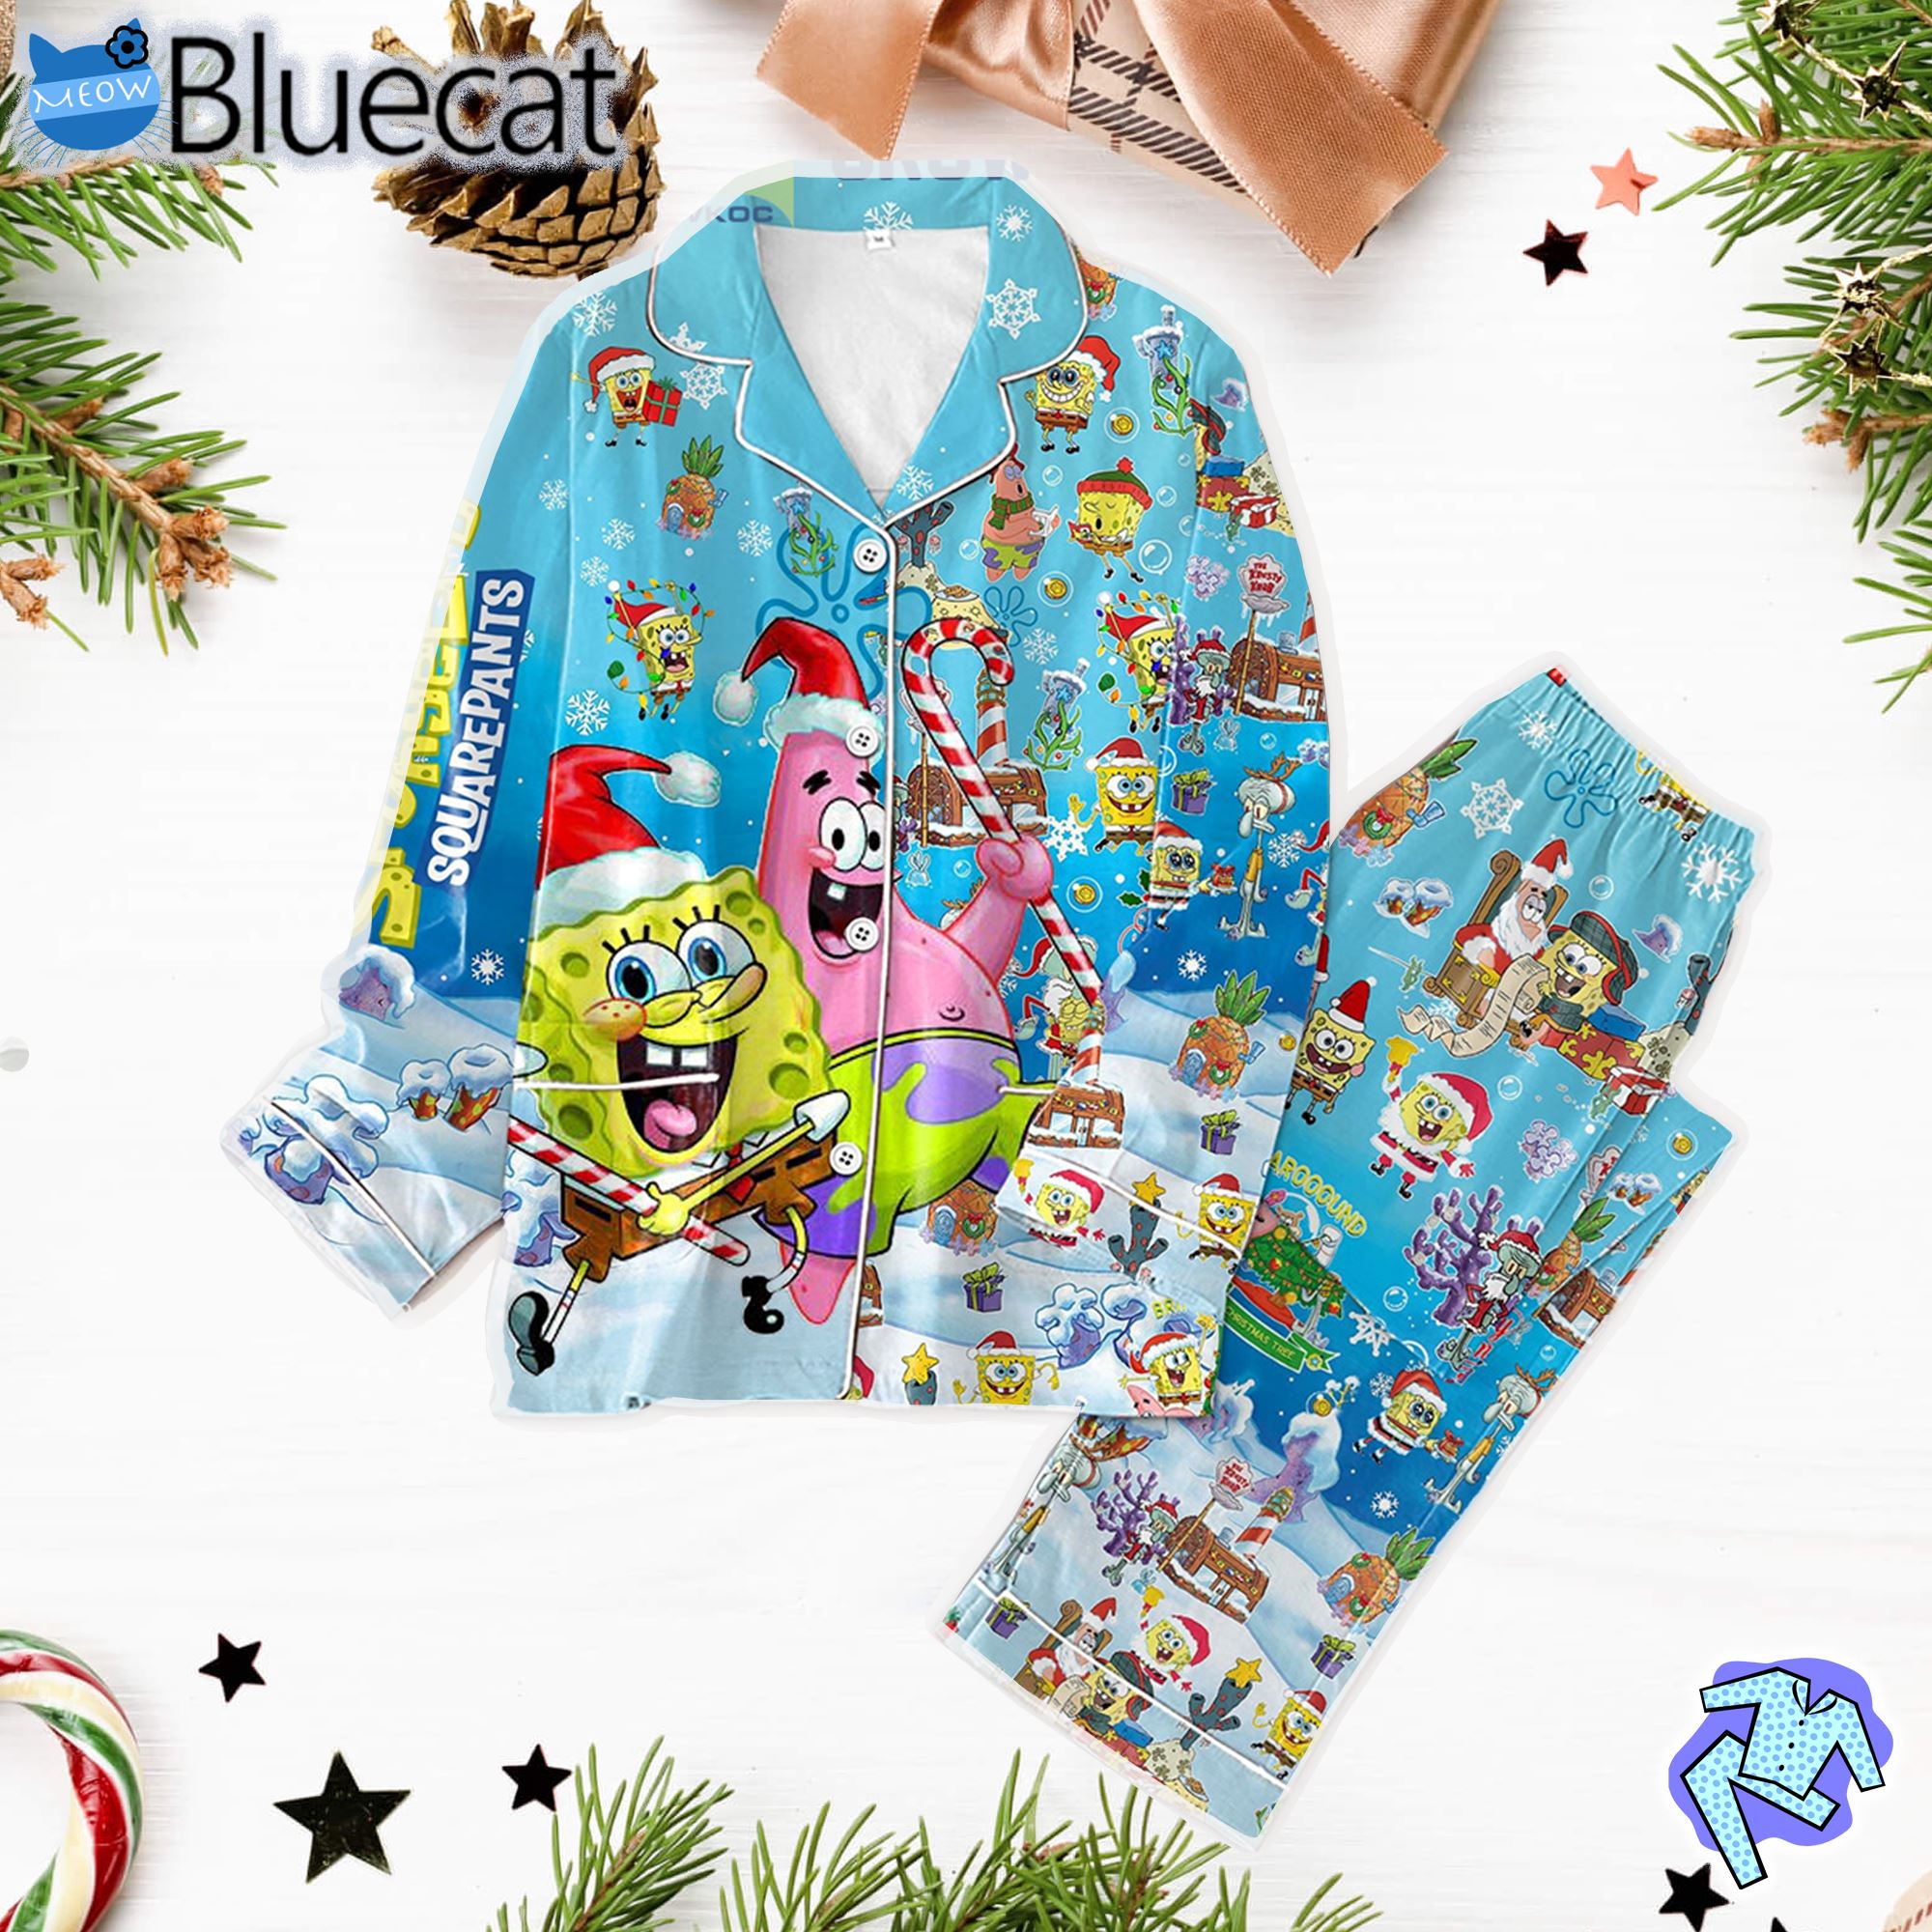 Spongebob Squarepants Bring It Around The Christmas Tree Pajamas Set 